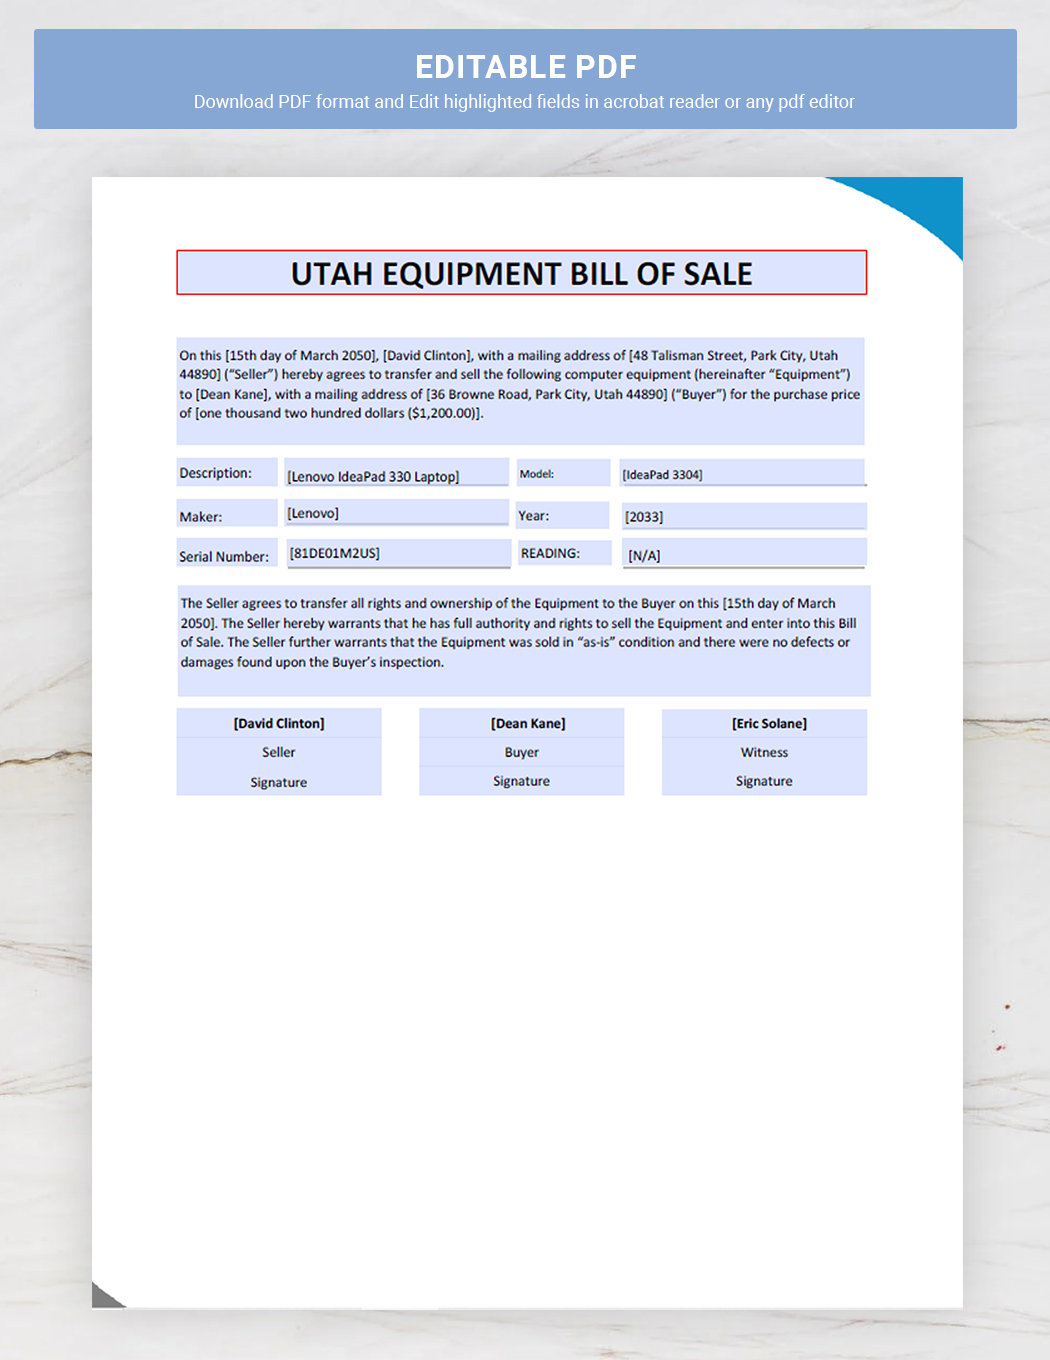 Utah Equipment Bill of Sale Template